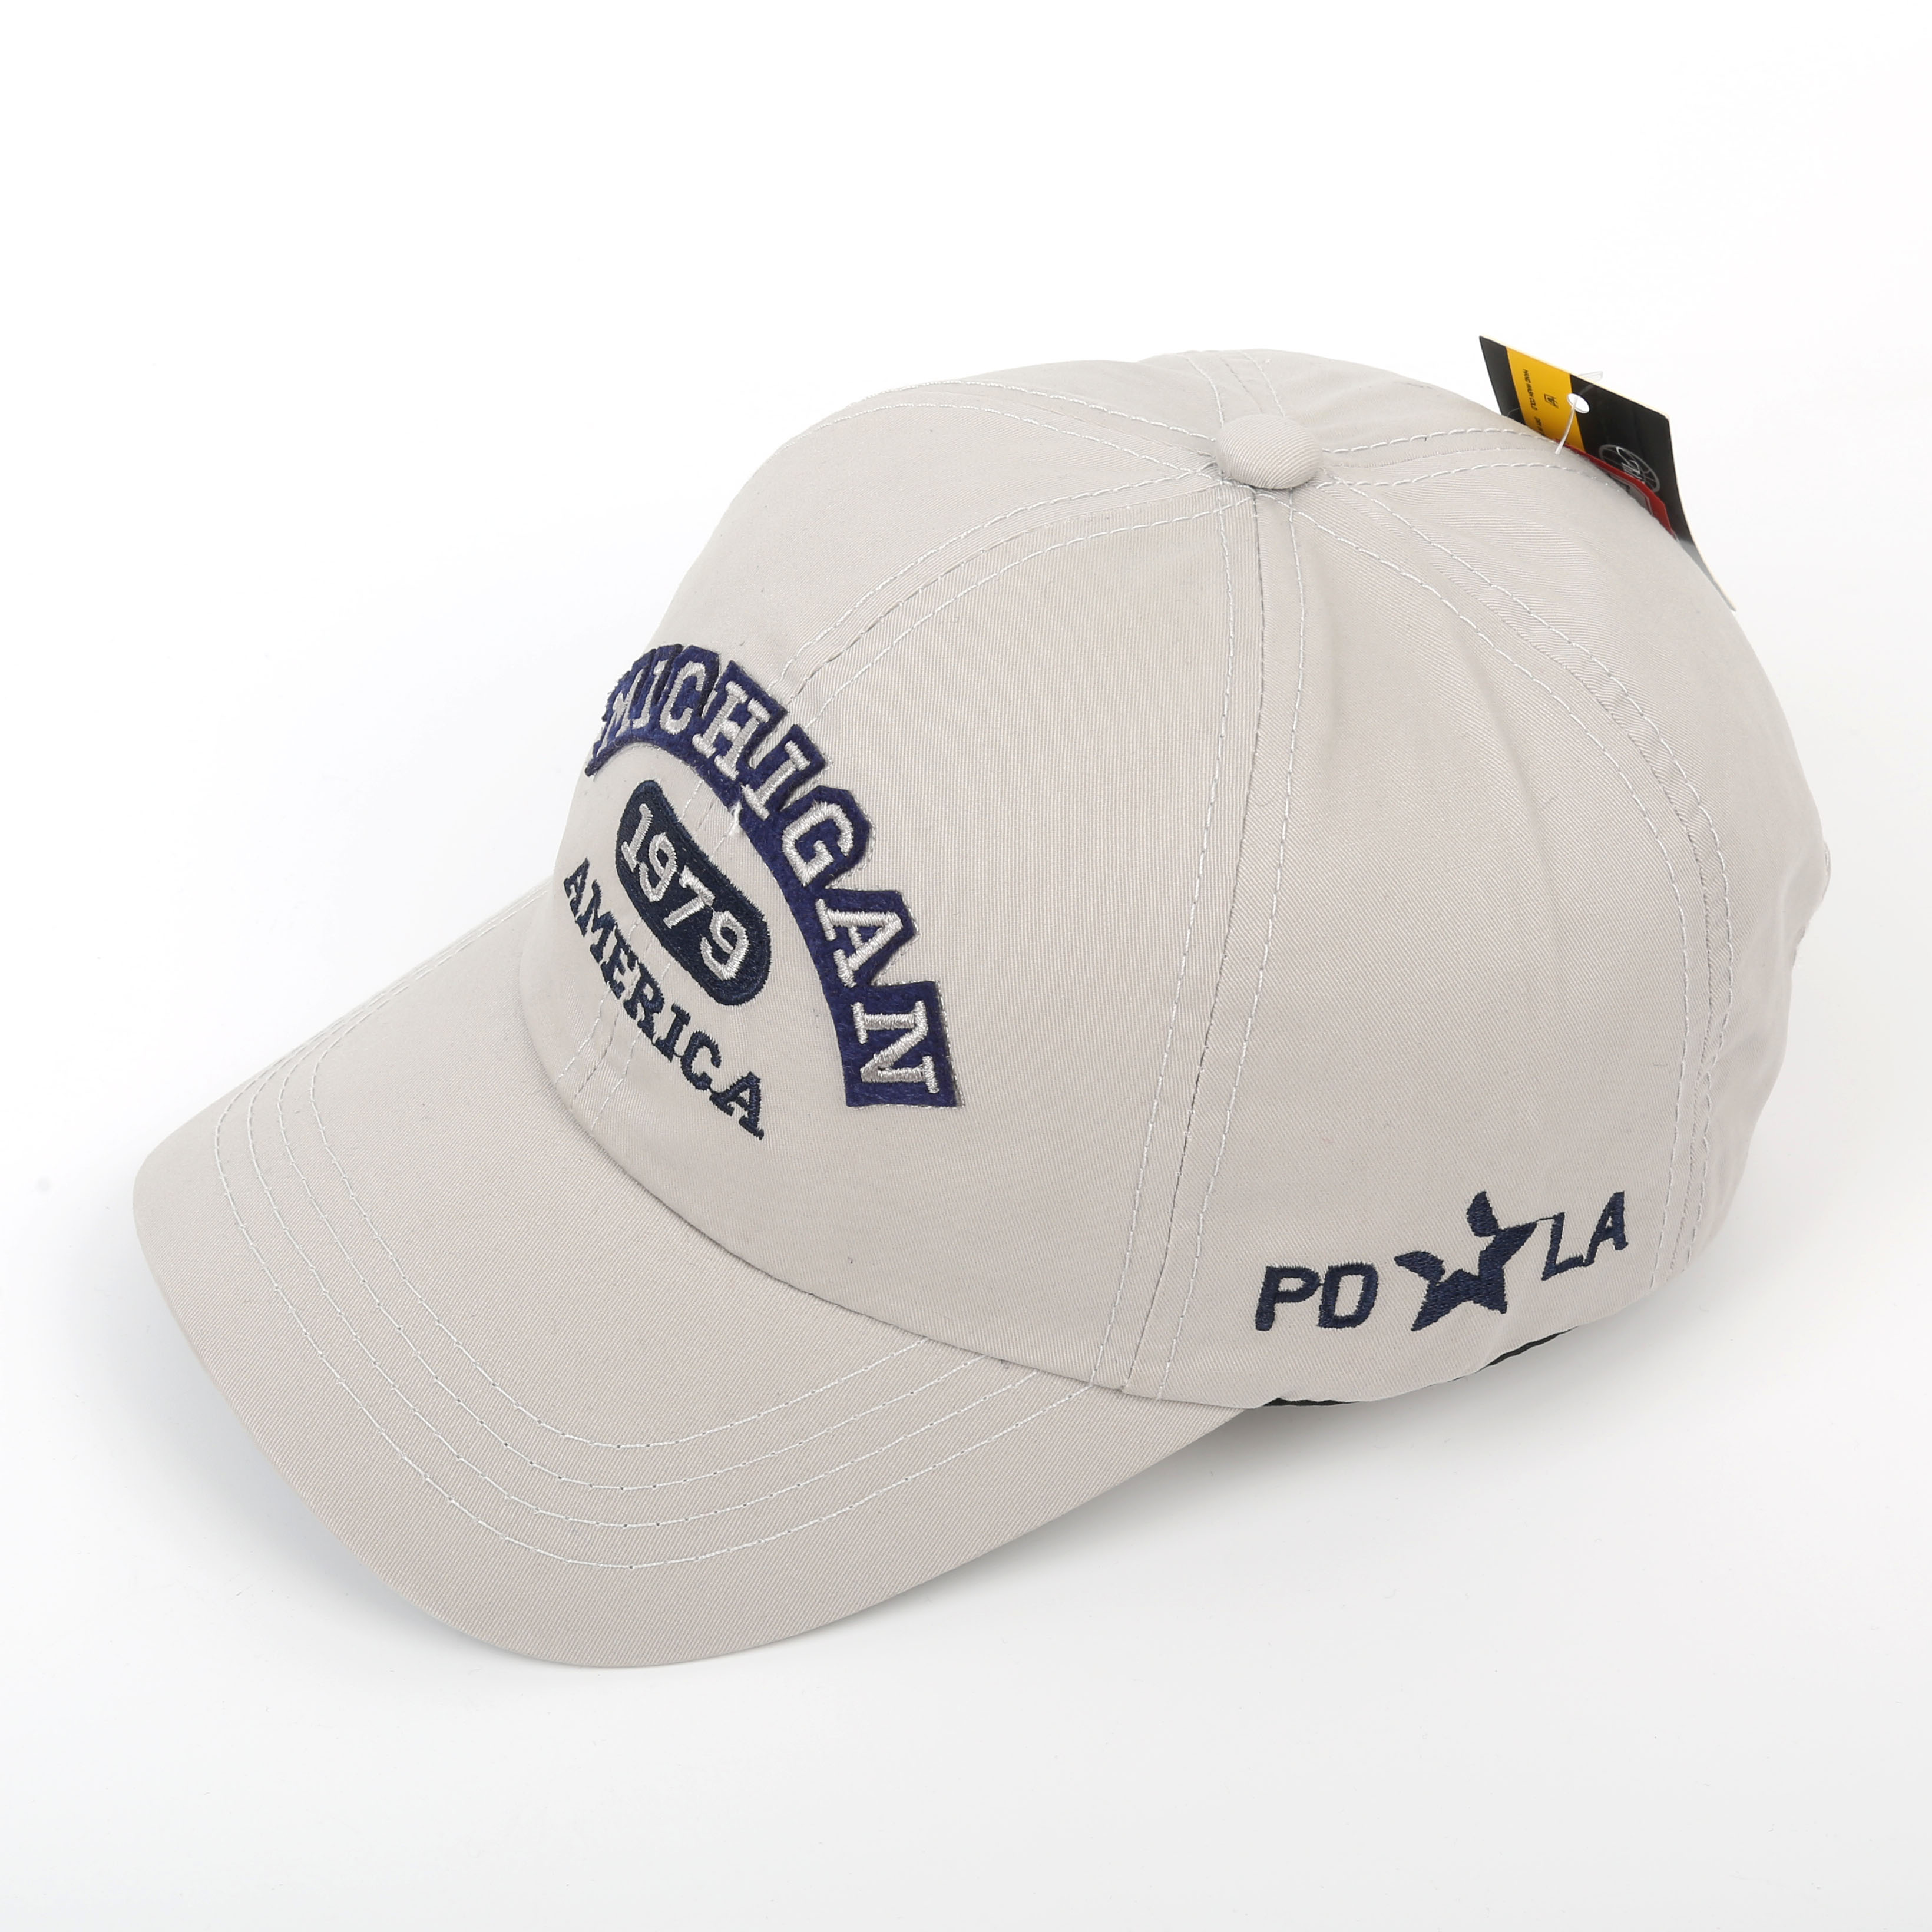 欧美风格大logo英文刺绣棒球帽 薄棉遮阳帽